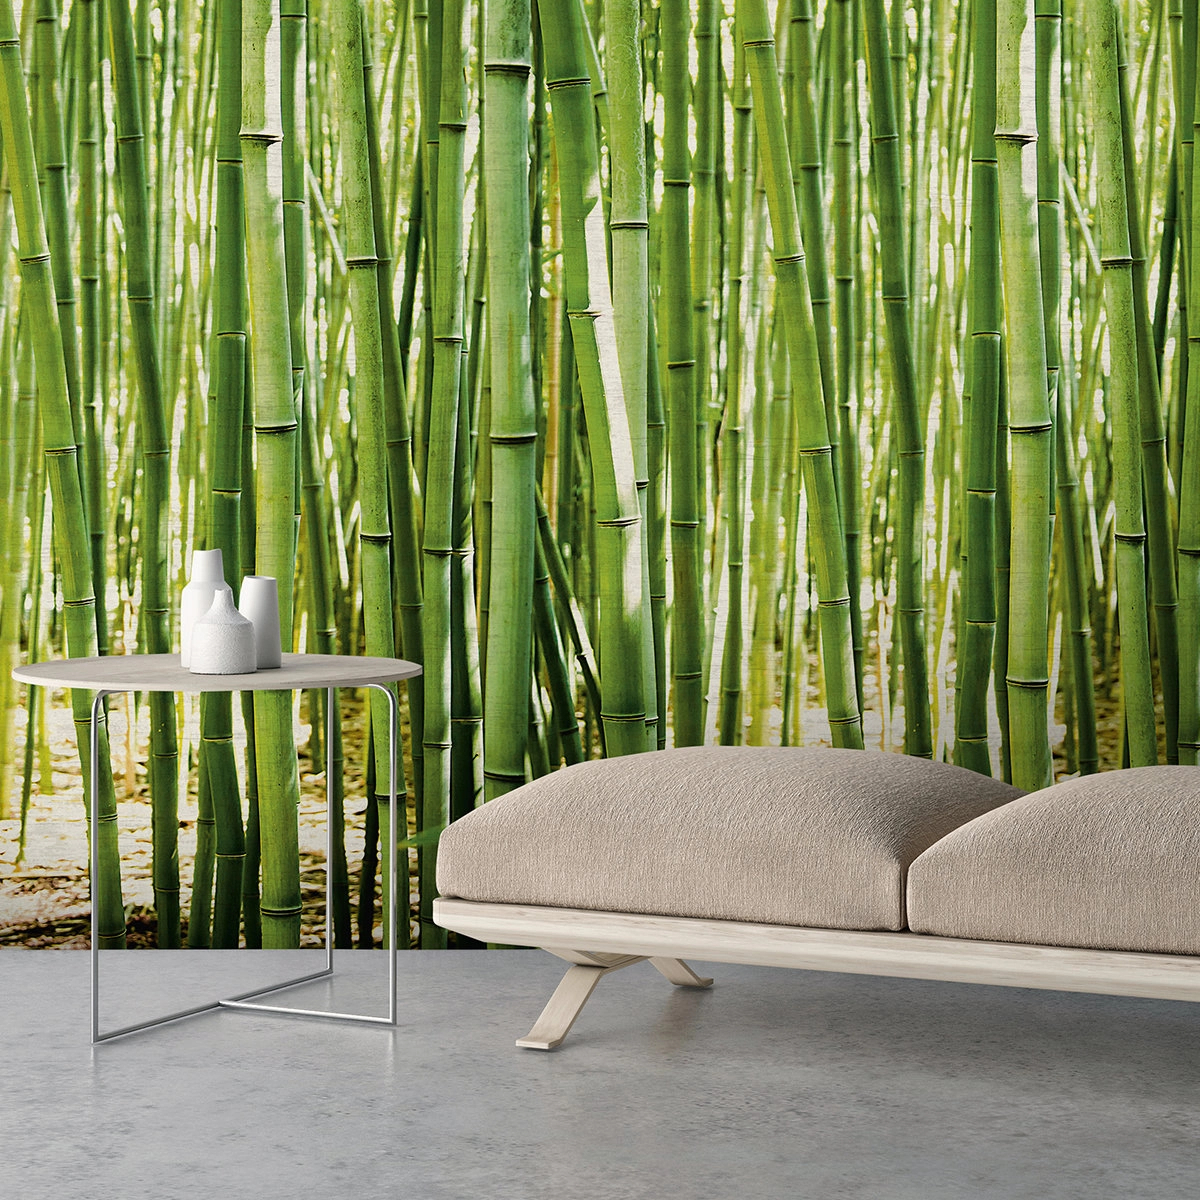 Zöld bambusz mintás vlies posztertapéta